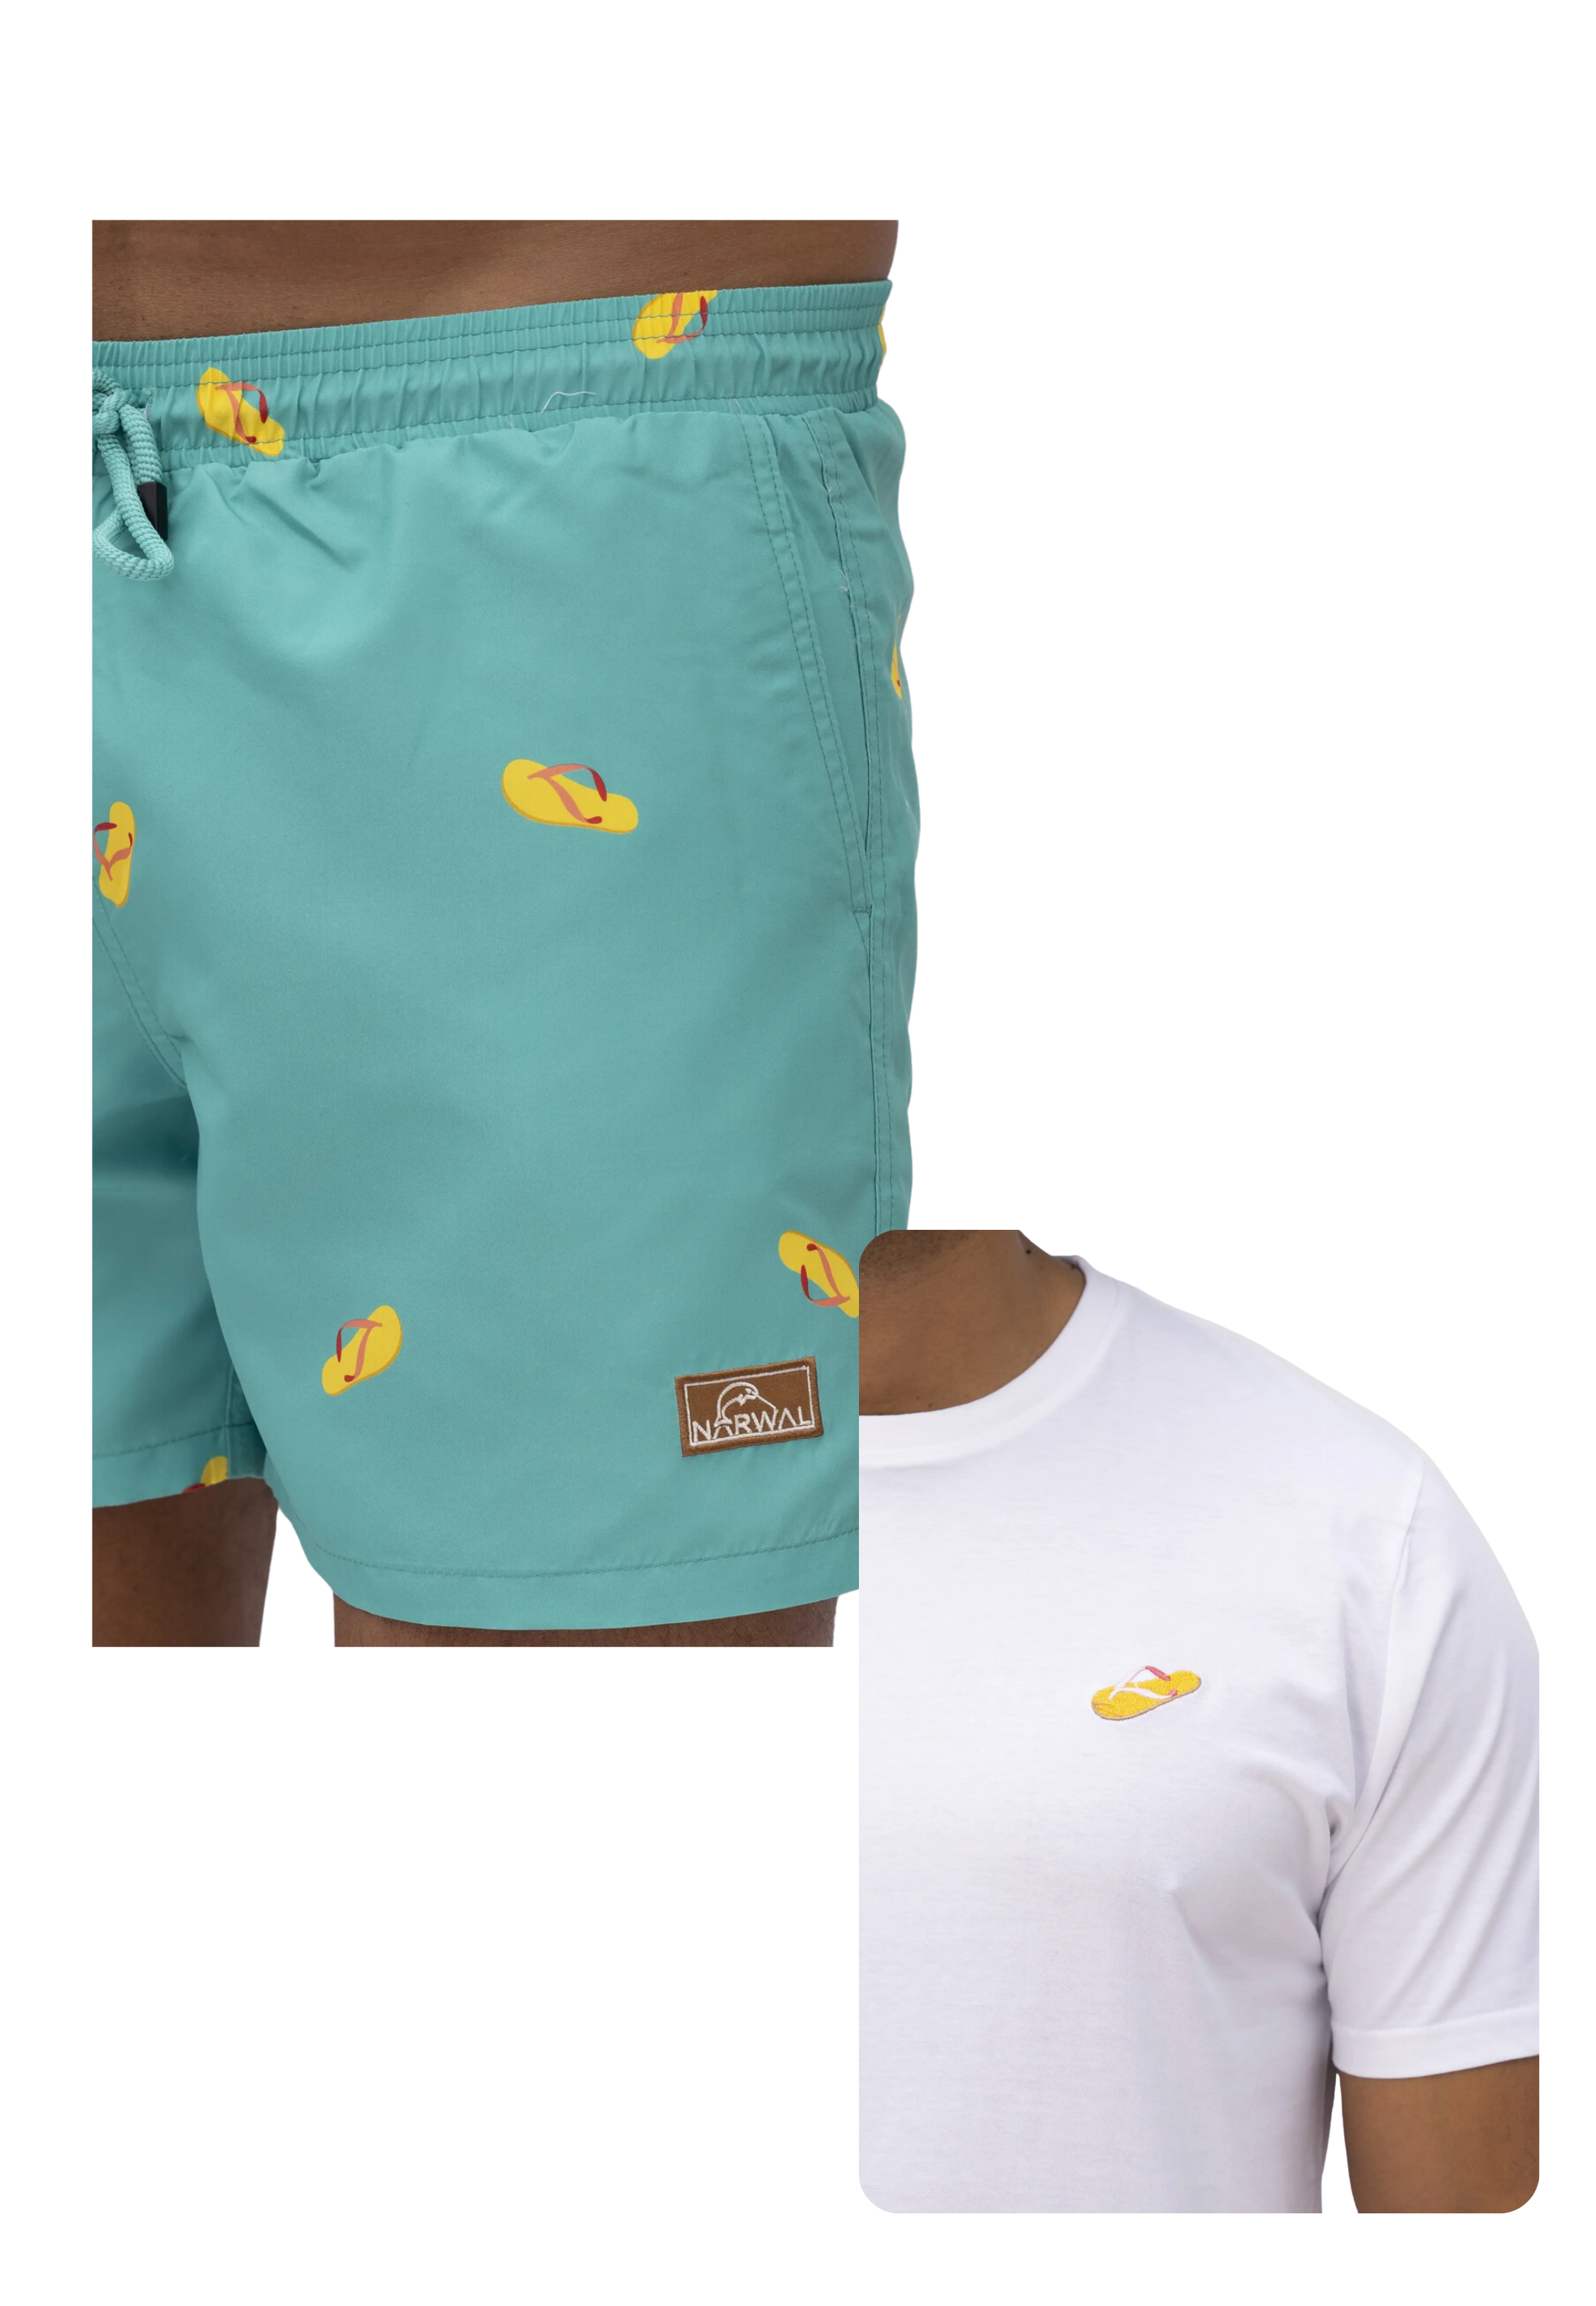 Flip-Flop Swim Trunks and T-shirt Bundle